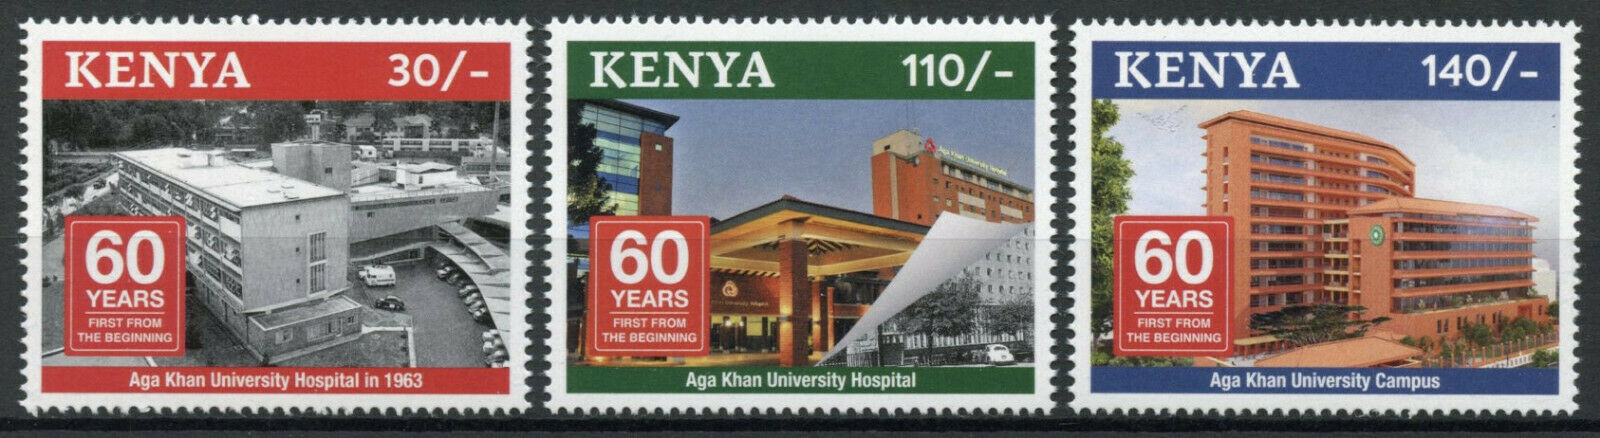 Kenya Medical Stamps 2018 MNH Aga Khan Medical Hospital Architecture 2v Set